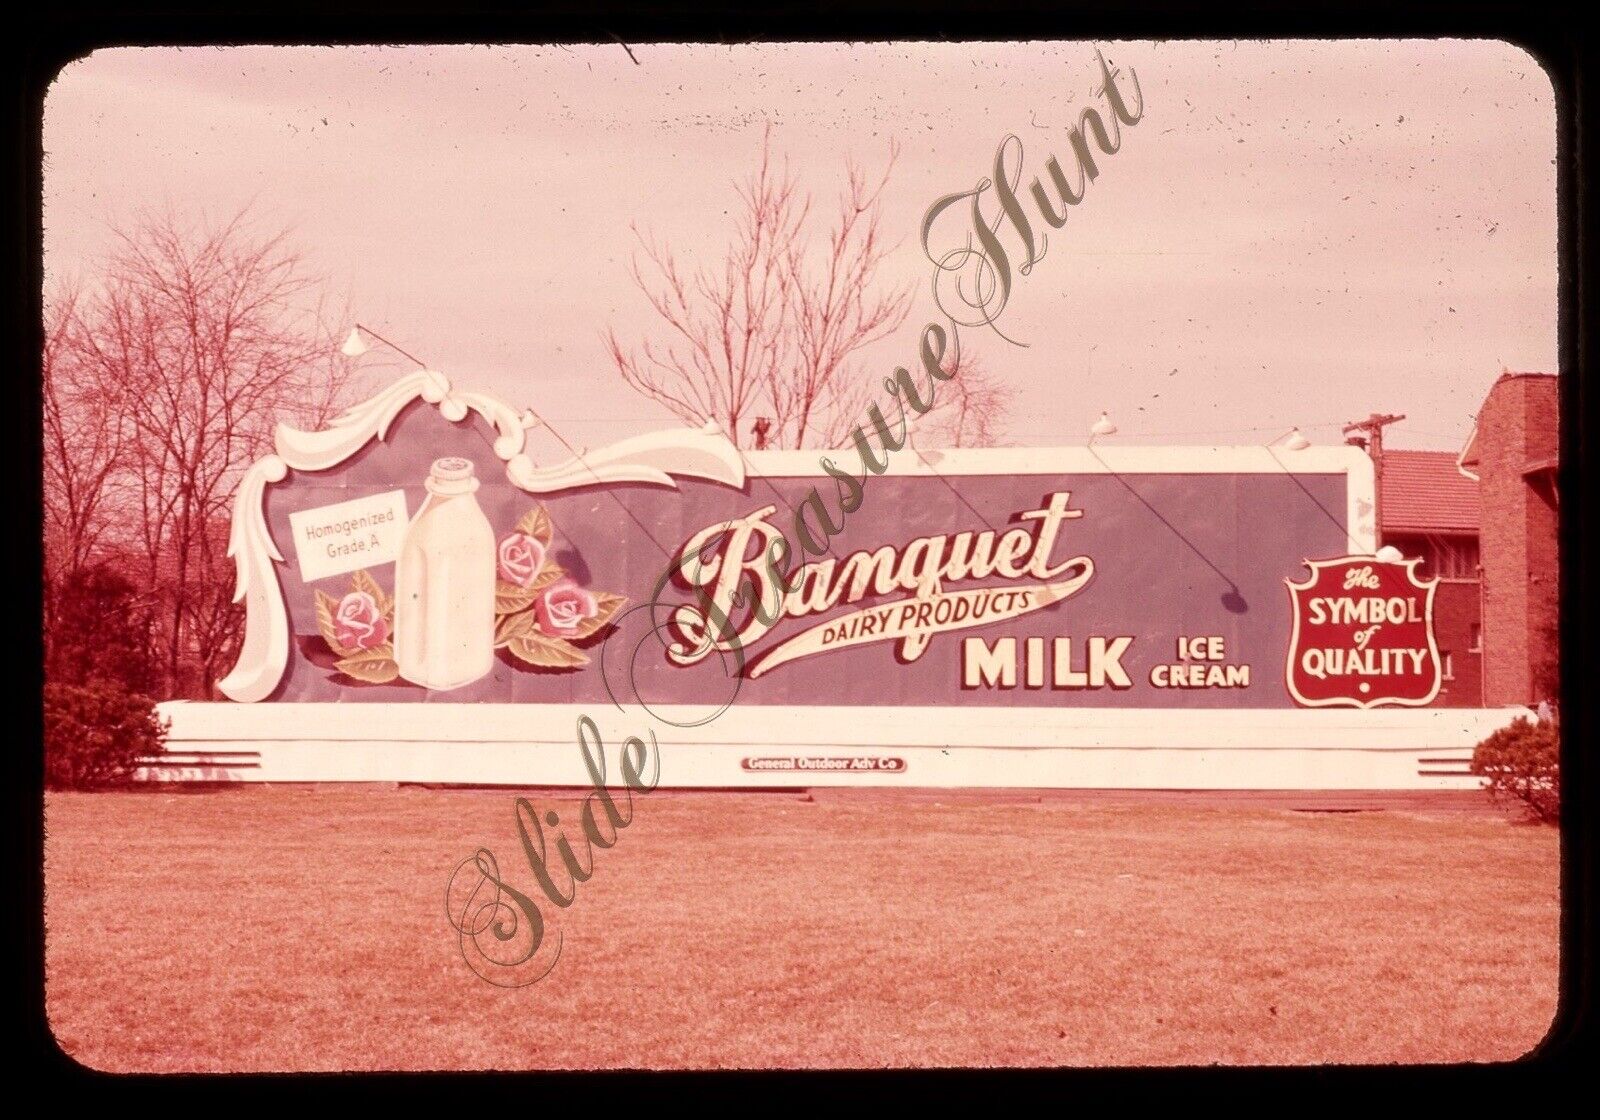 Banquet Dairy Milk Billboard Sign 1950s 35mm Slide